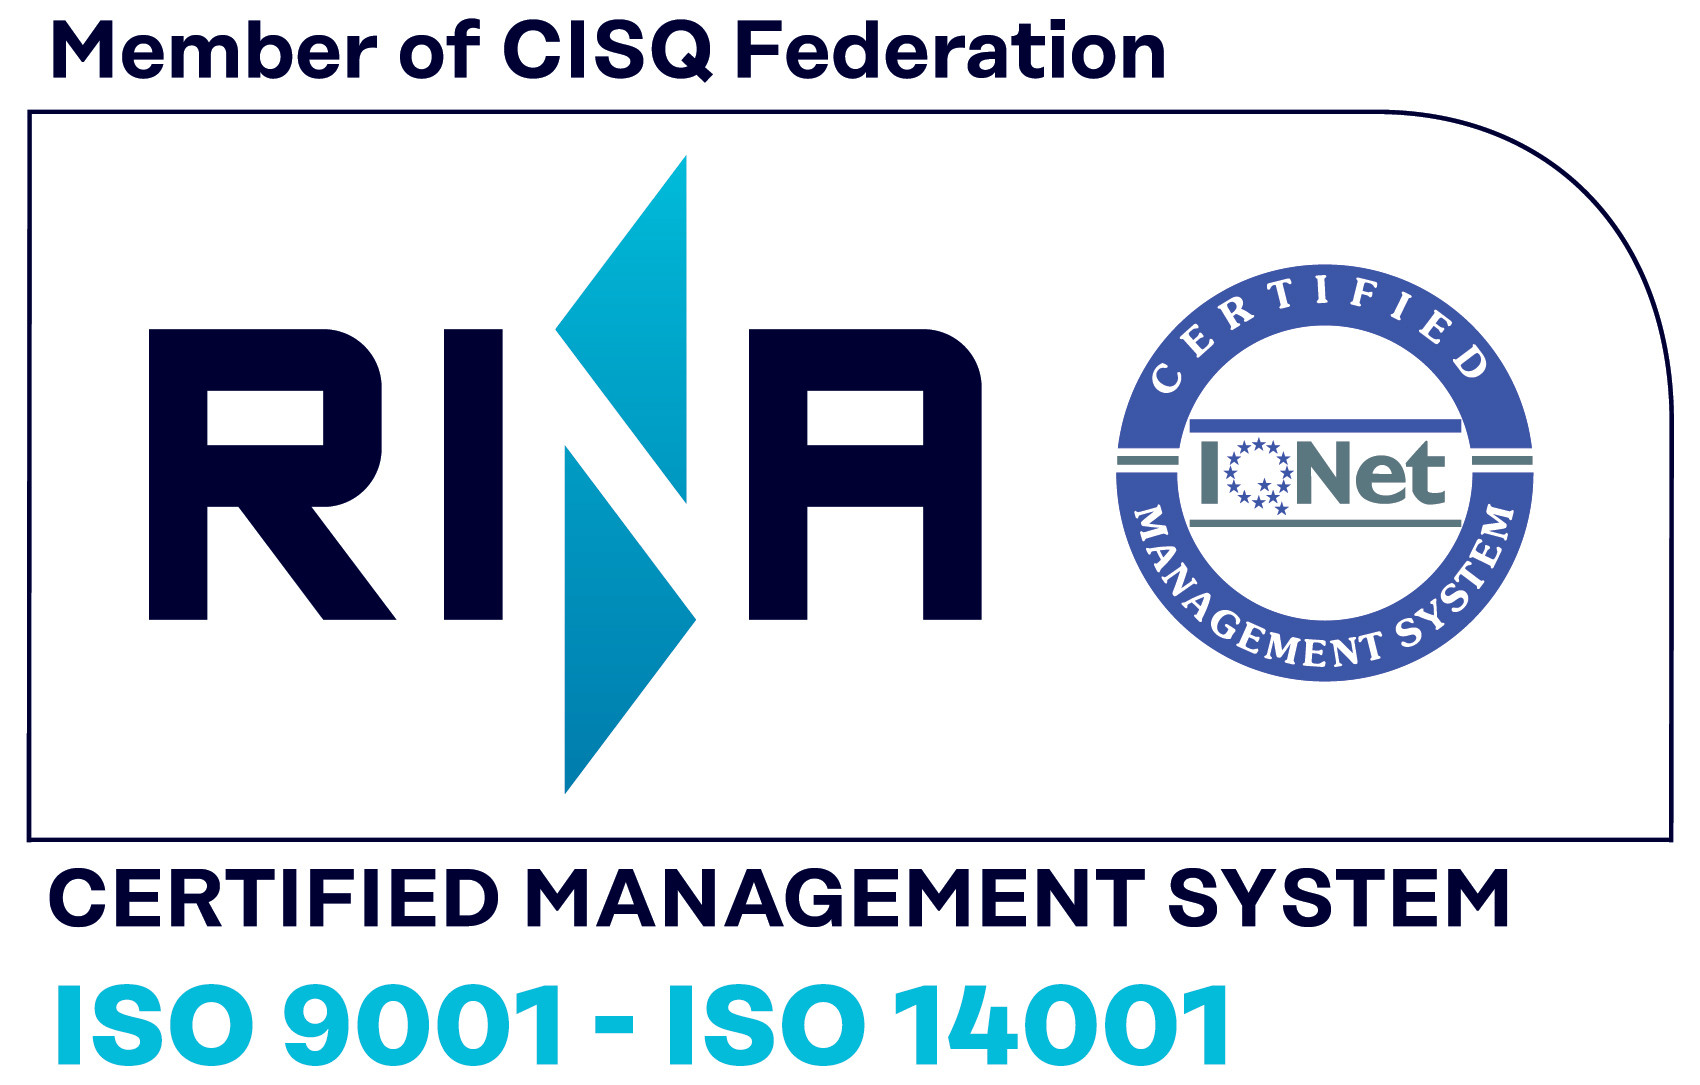 Certificazioni ISO 9001